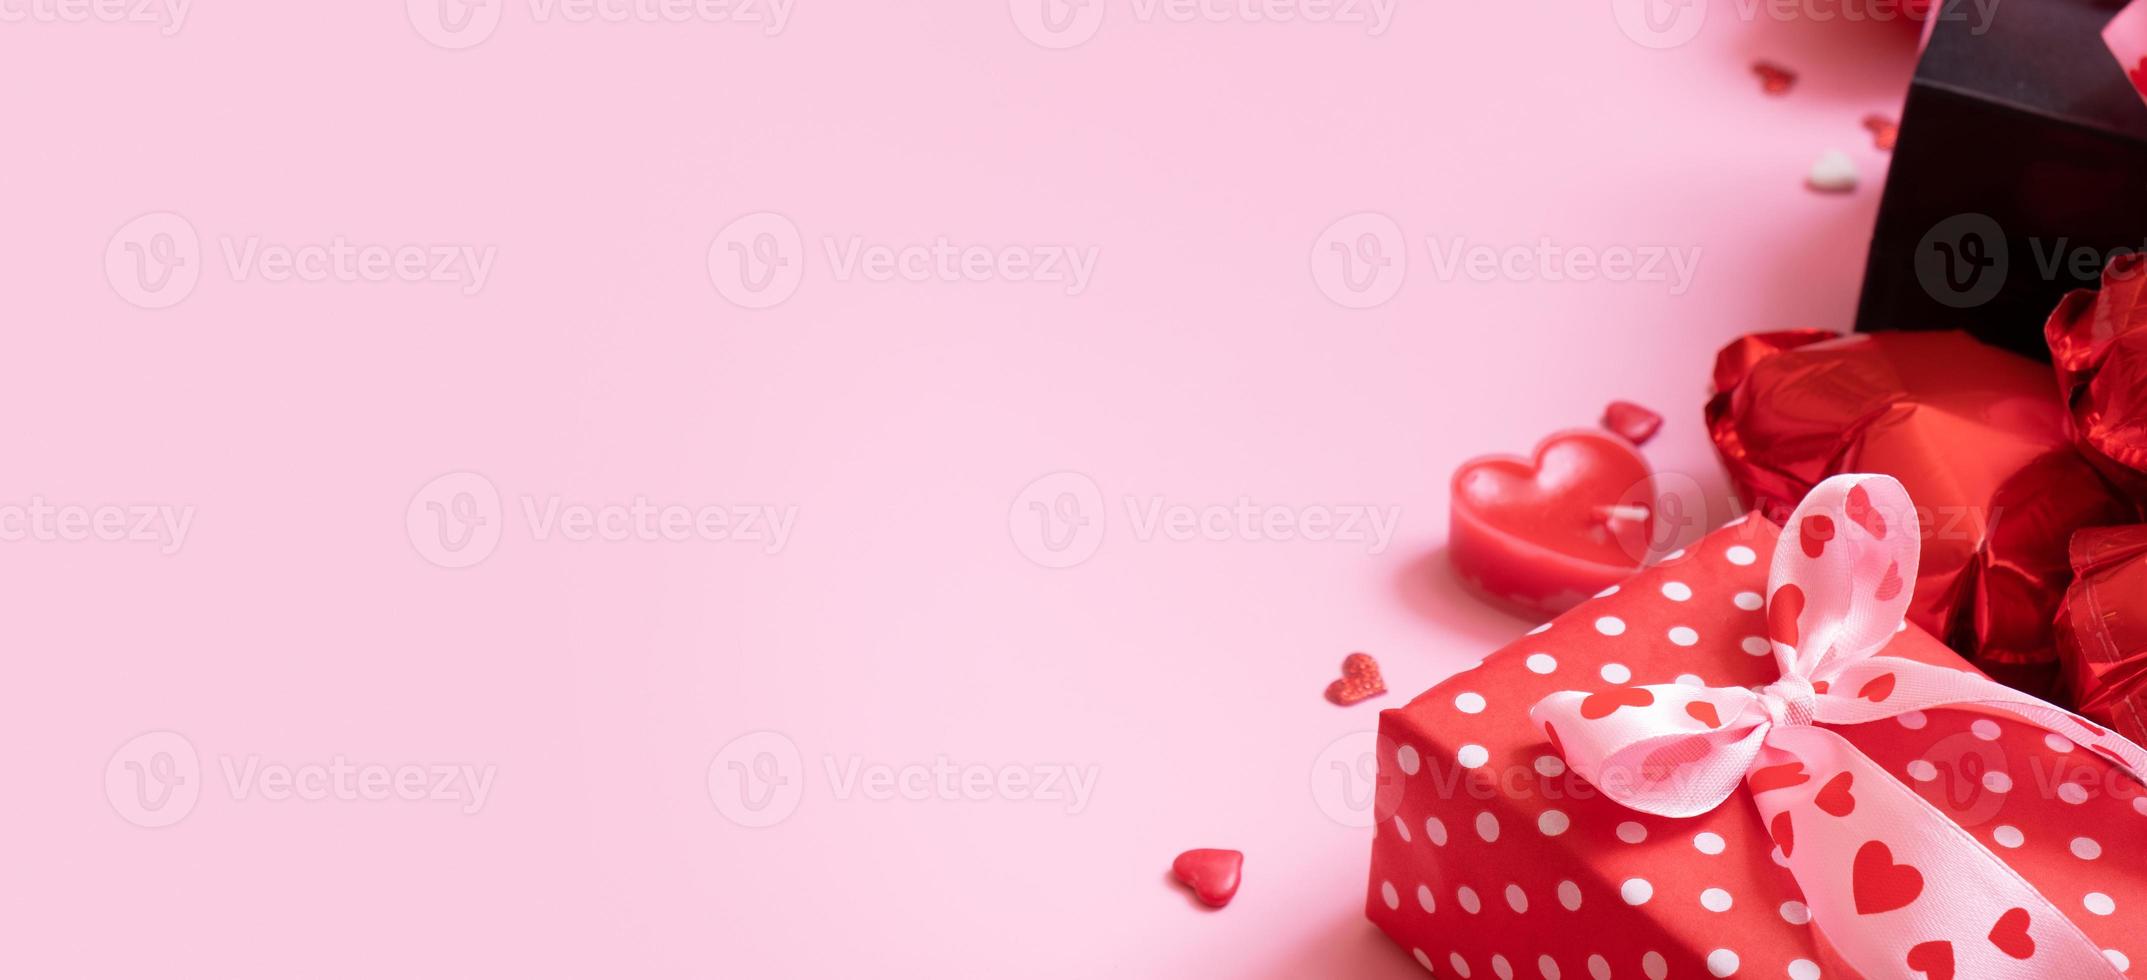 caja de regalo, velas y globos con forma de corazón rojo sobre fondo rosa. pancarta del día de san valentín foto